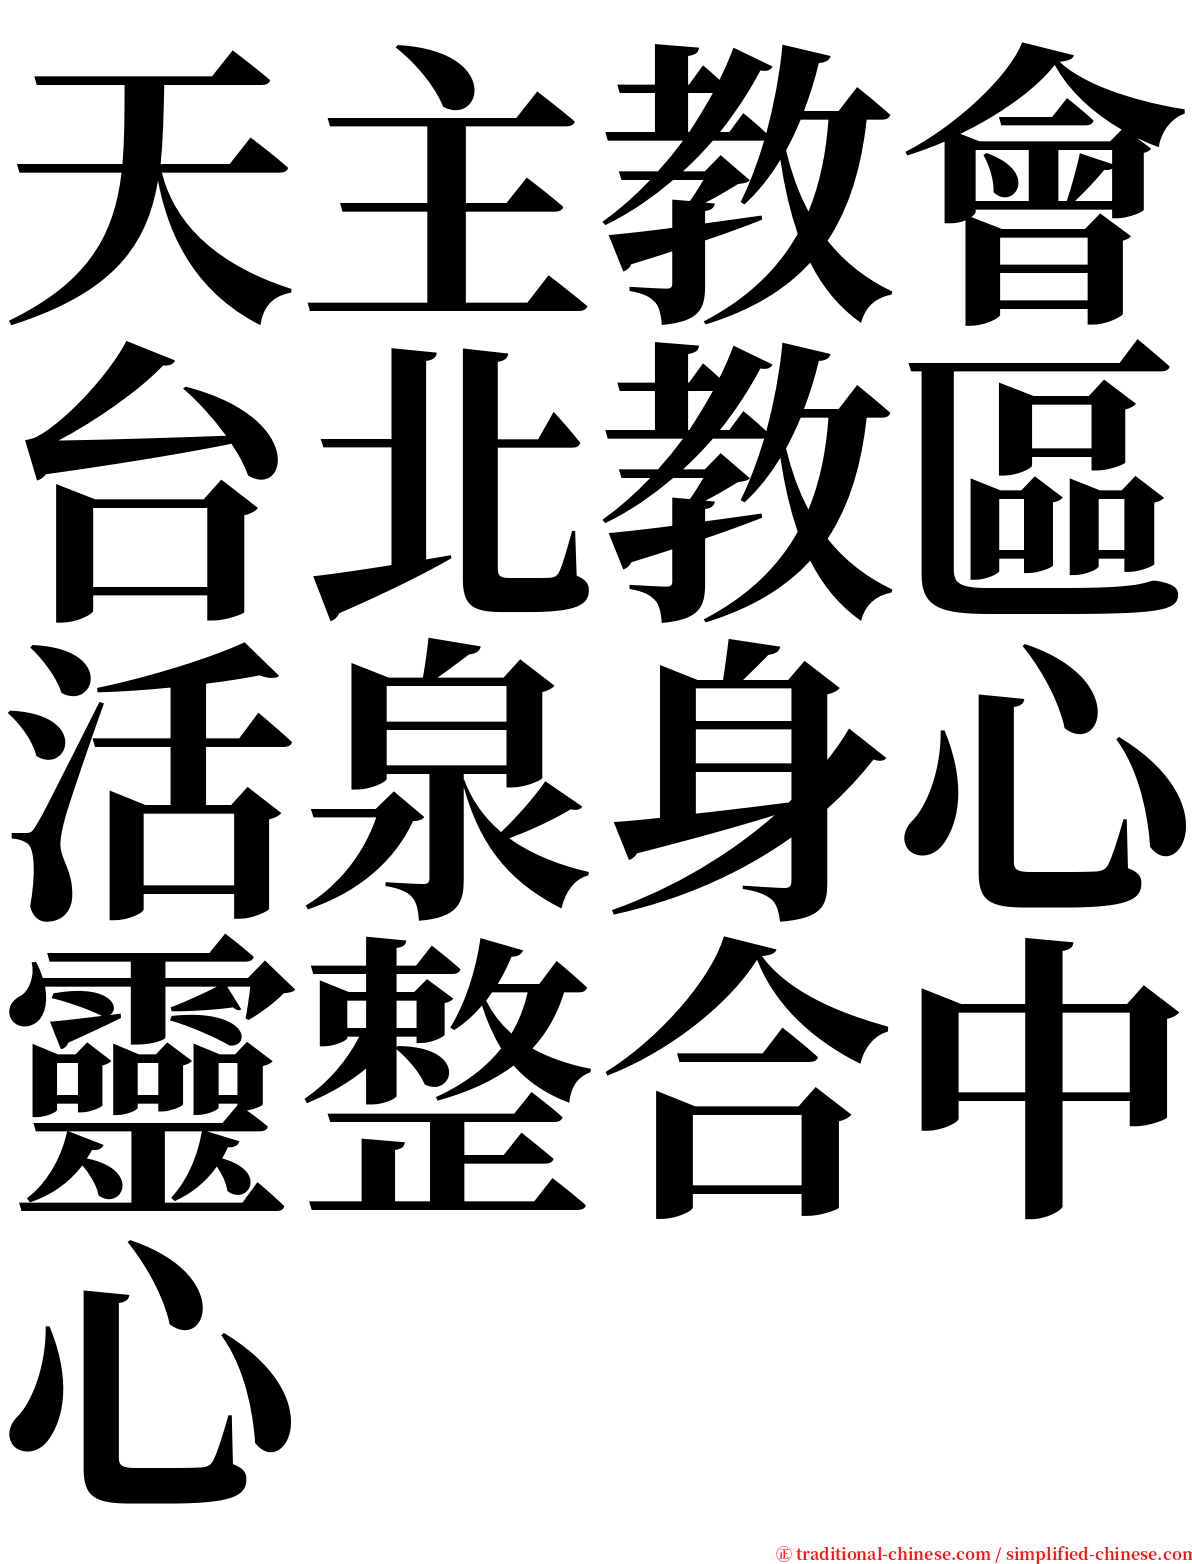 天主教會台北教區活泉身心靈整合中心 serif font